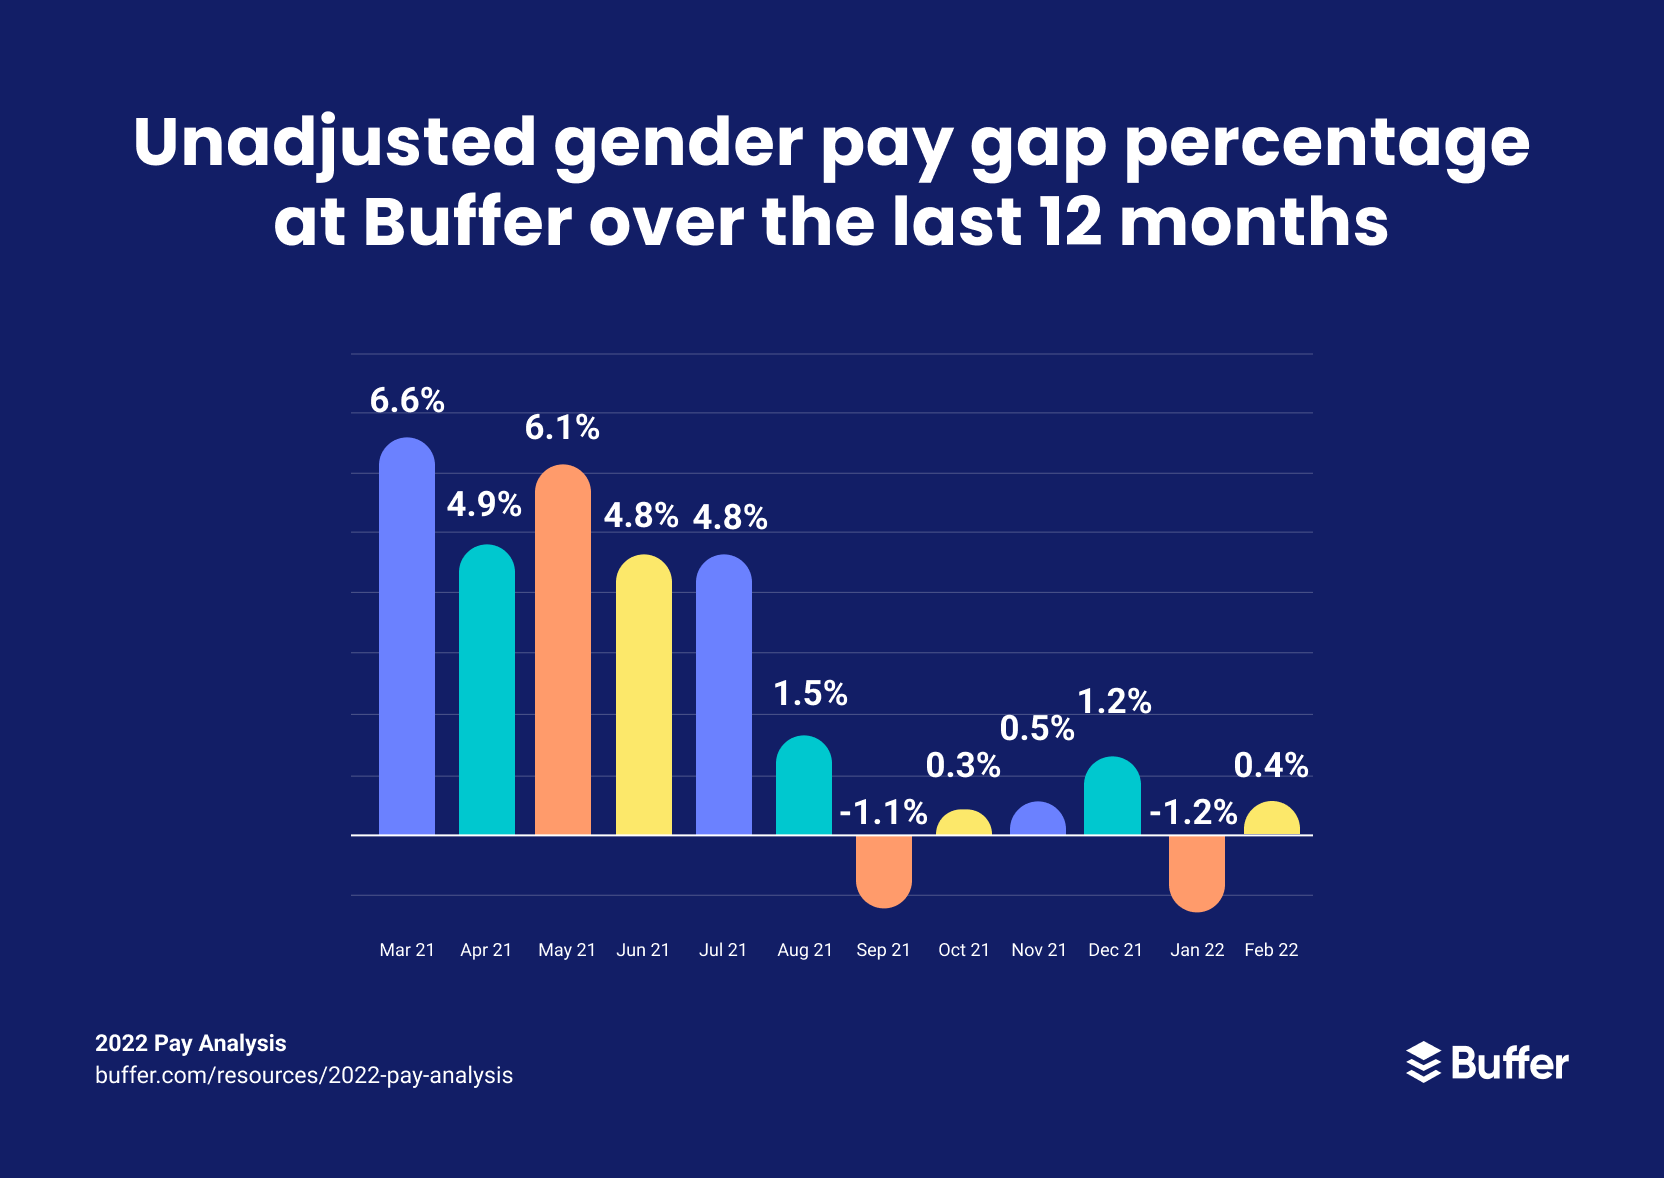 Gráfico que muestra el porcentaje de páginas de nómina de género sin ajustar de Buffer en los últimos 12 meses